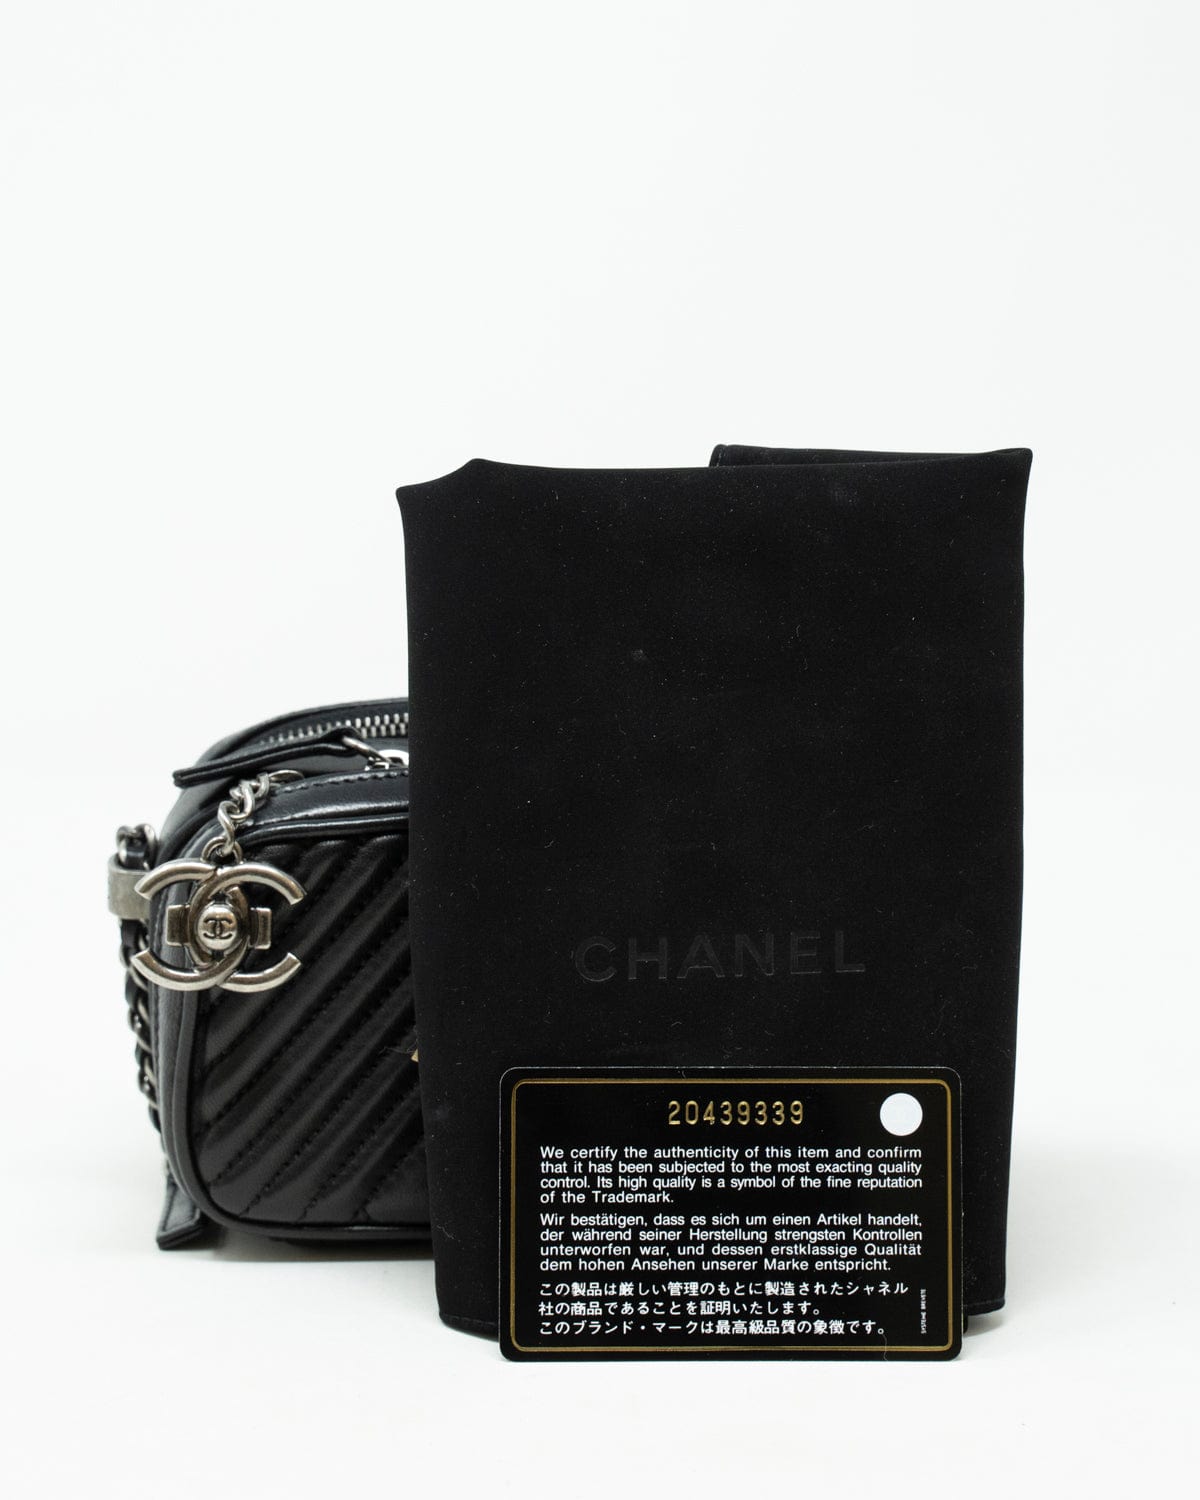 Chanel Chanel Wild stitch Camera Bag - ADL1810